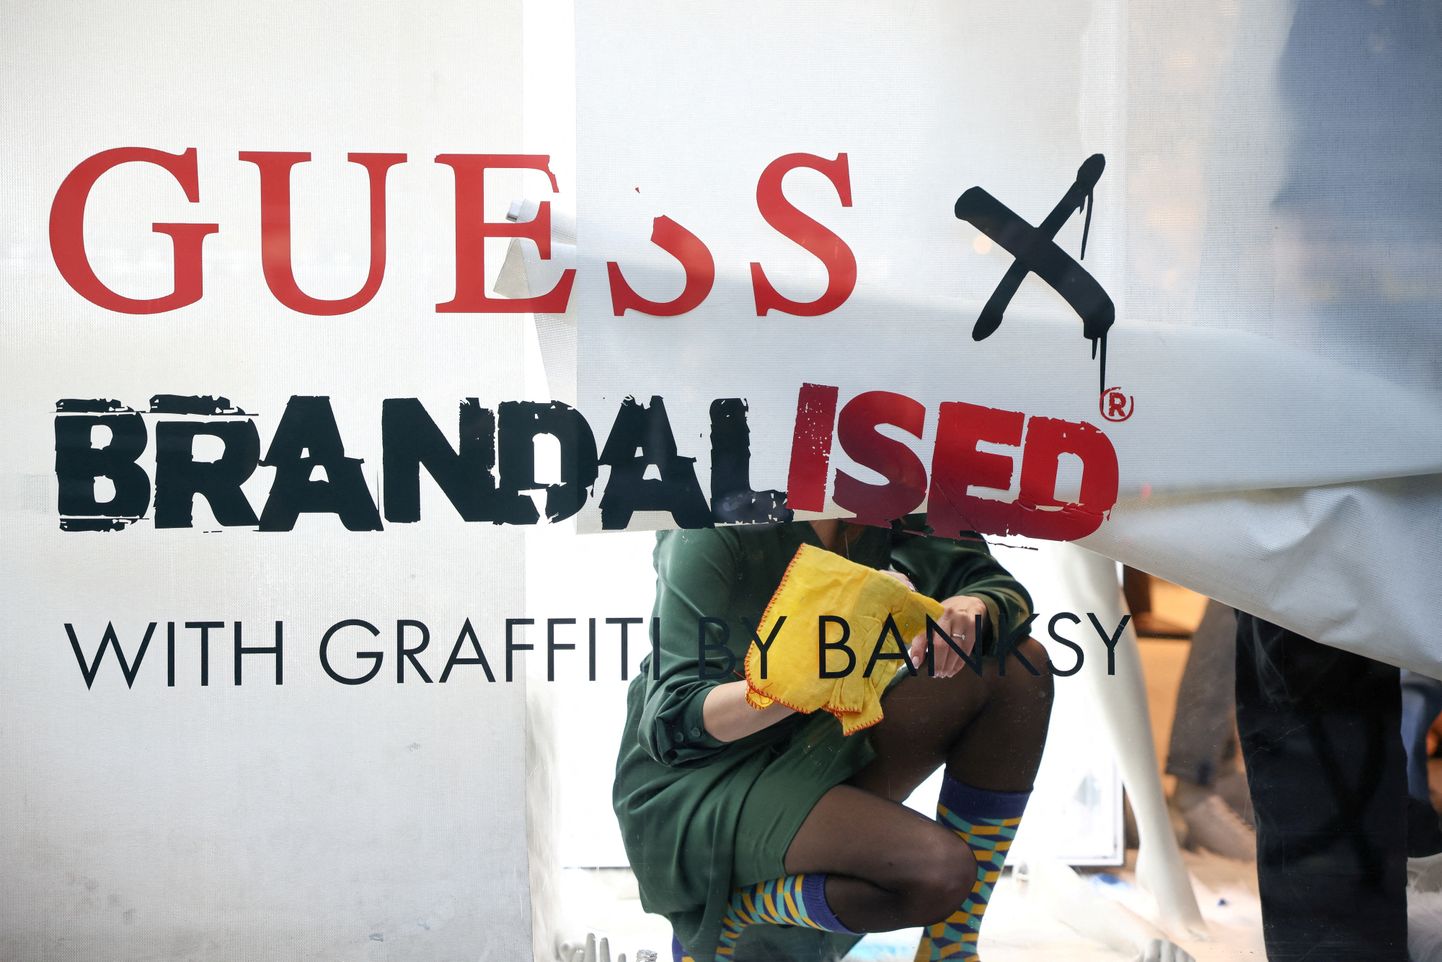 Töötajad eemaldasid Guessi rõivapoe vaateaknalt tänavakunstnik Banksy sõnumi. Regent Street, London, Inglismaa. 18.11.2022.